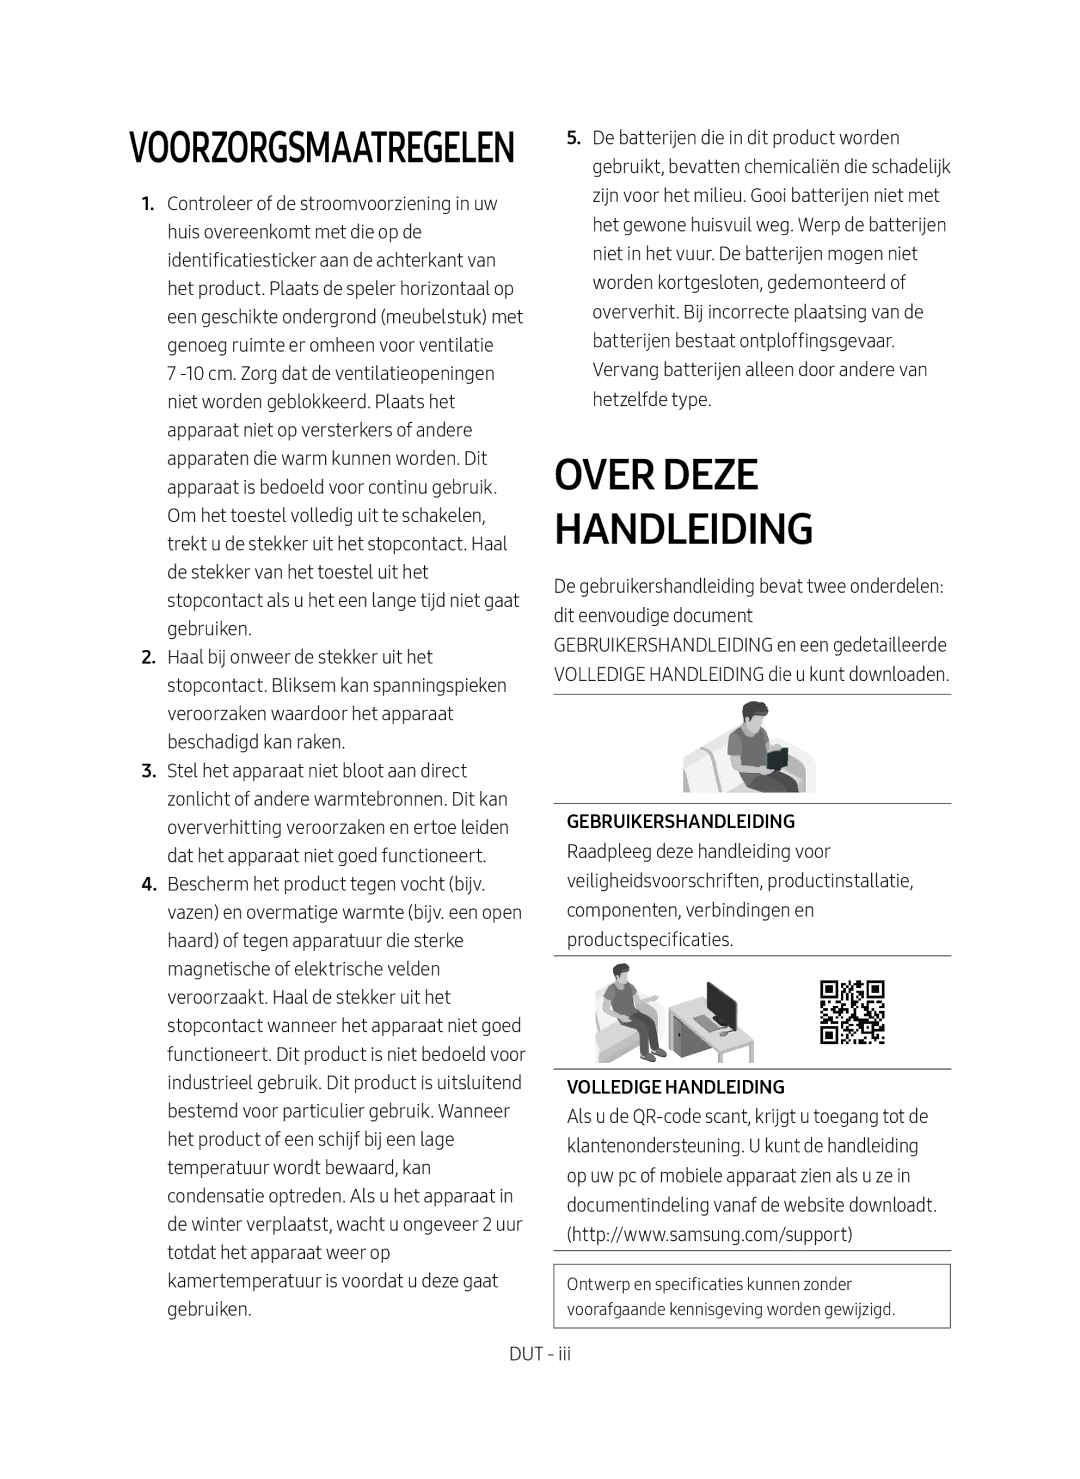 Samsung HW-M4500/EN manual Over Deze Handleiding 